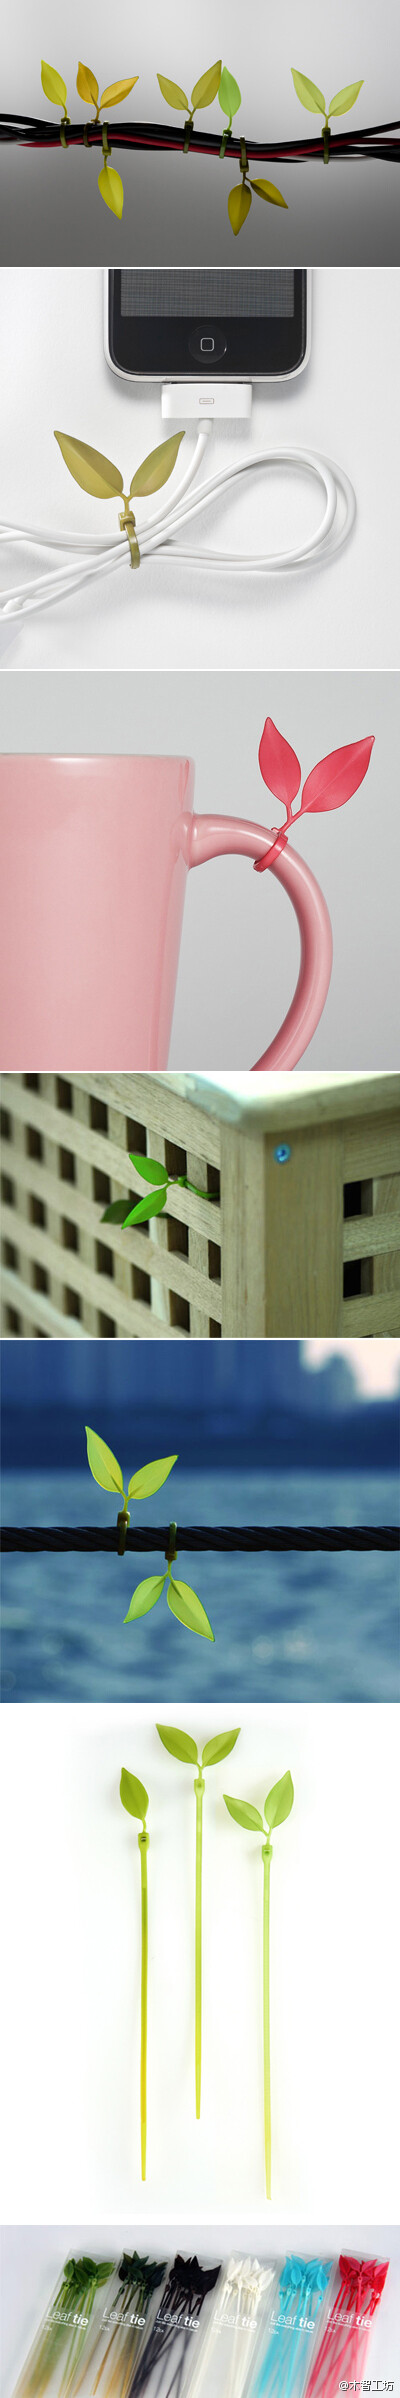 韩国Lufdesign工作室将生活中常用的集线设计为两片叶子的形状，小小的改动可以带来非常清新的效果。